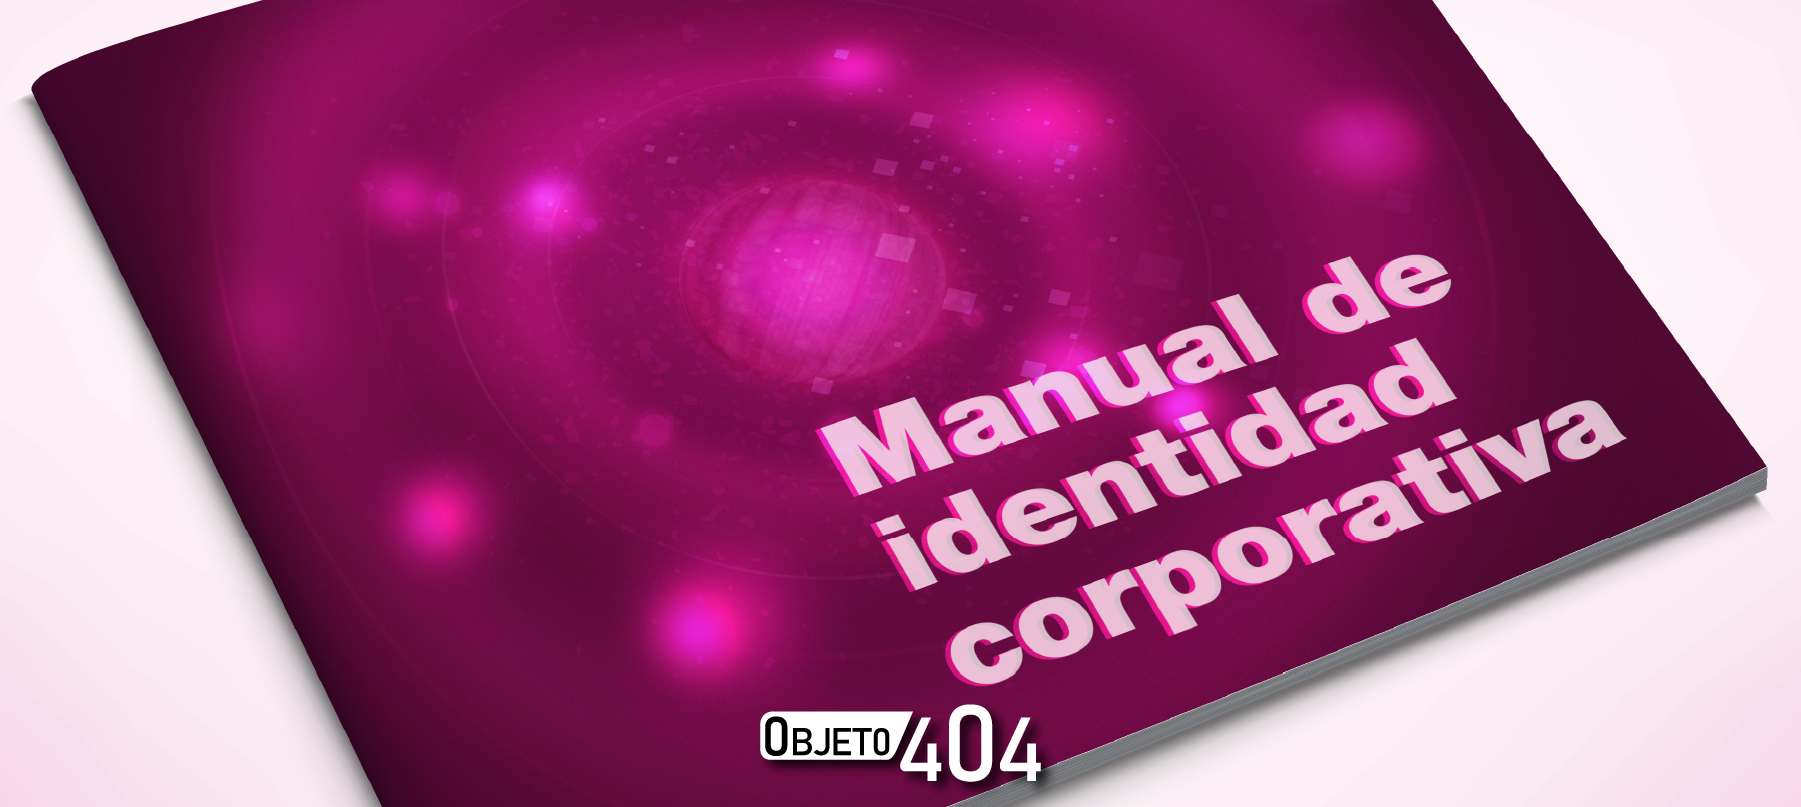 Manual de identidad visual corporativa ¿Qué es y qué incluye?